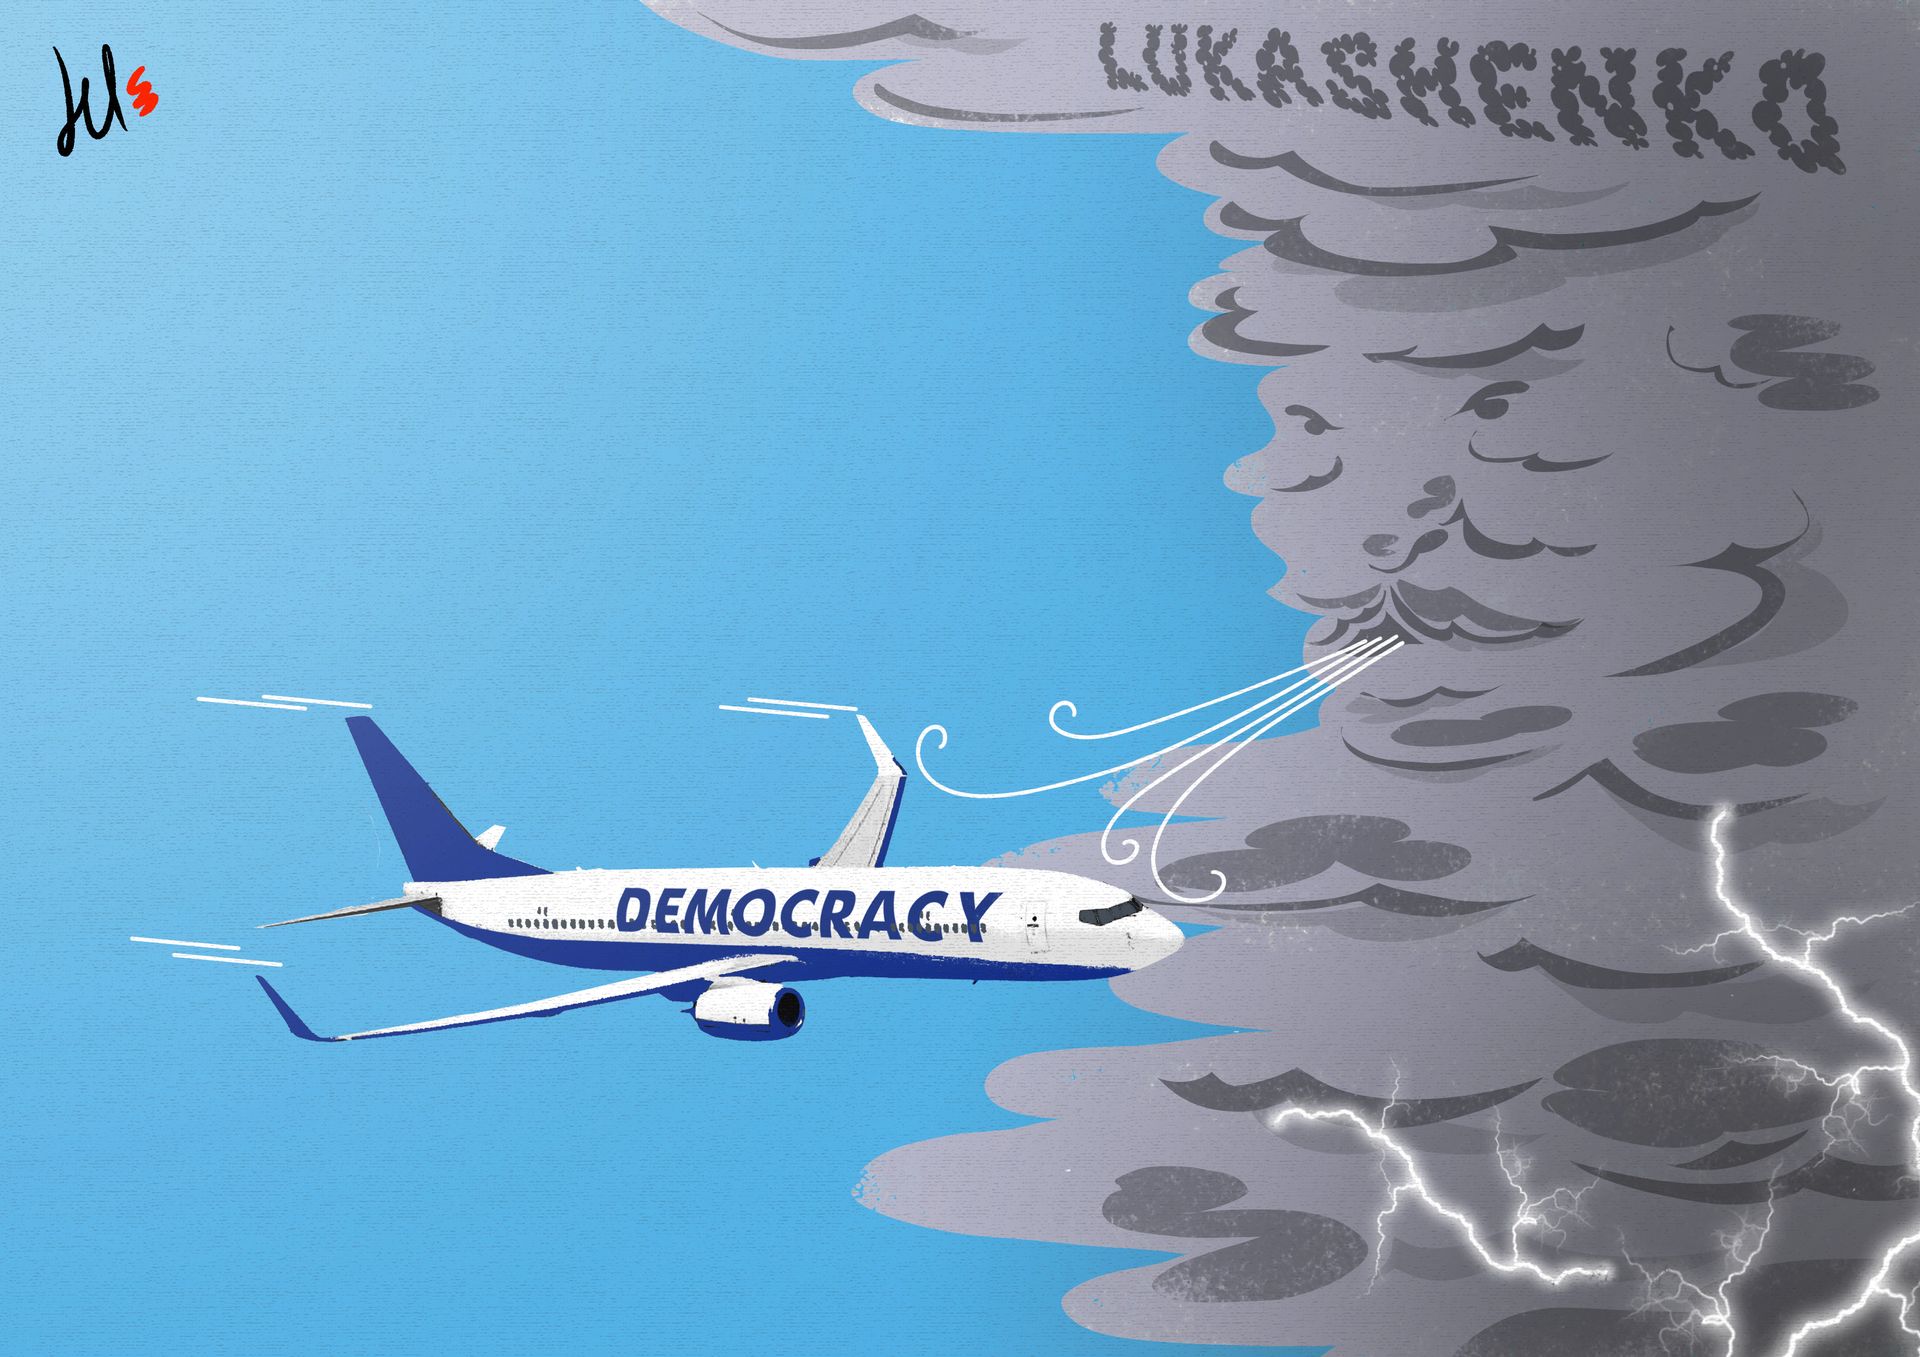 Blowing away democracy - Del Rosso